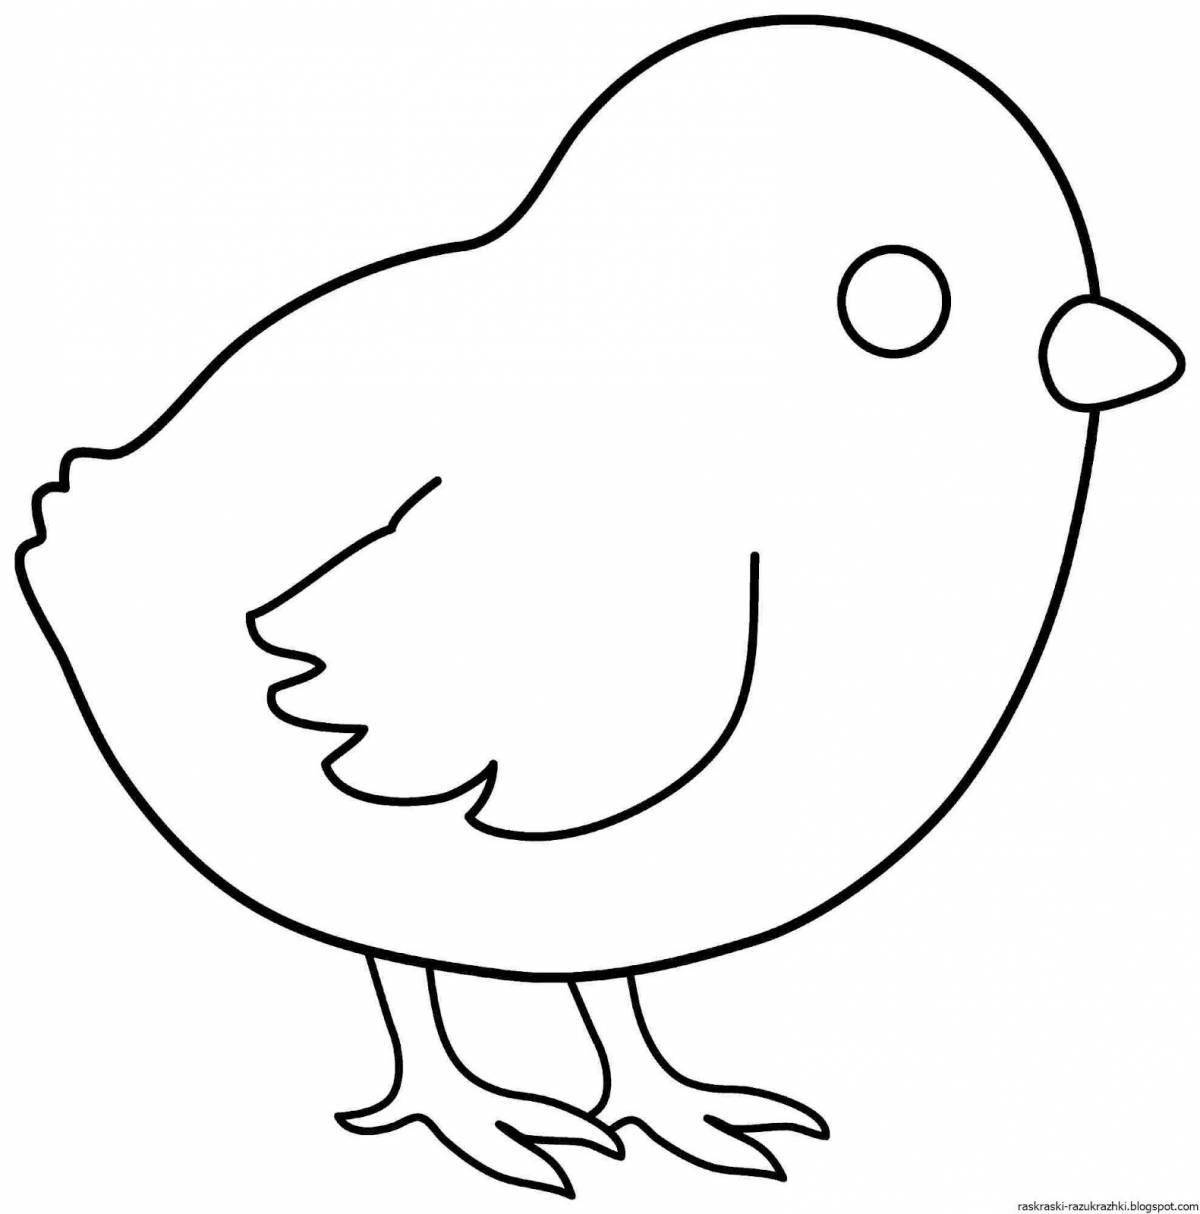 Великолепная страница раскраски домашней птицы для маленьких учеников